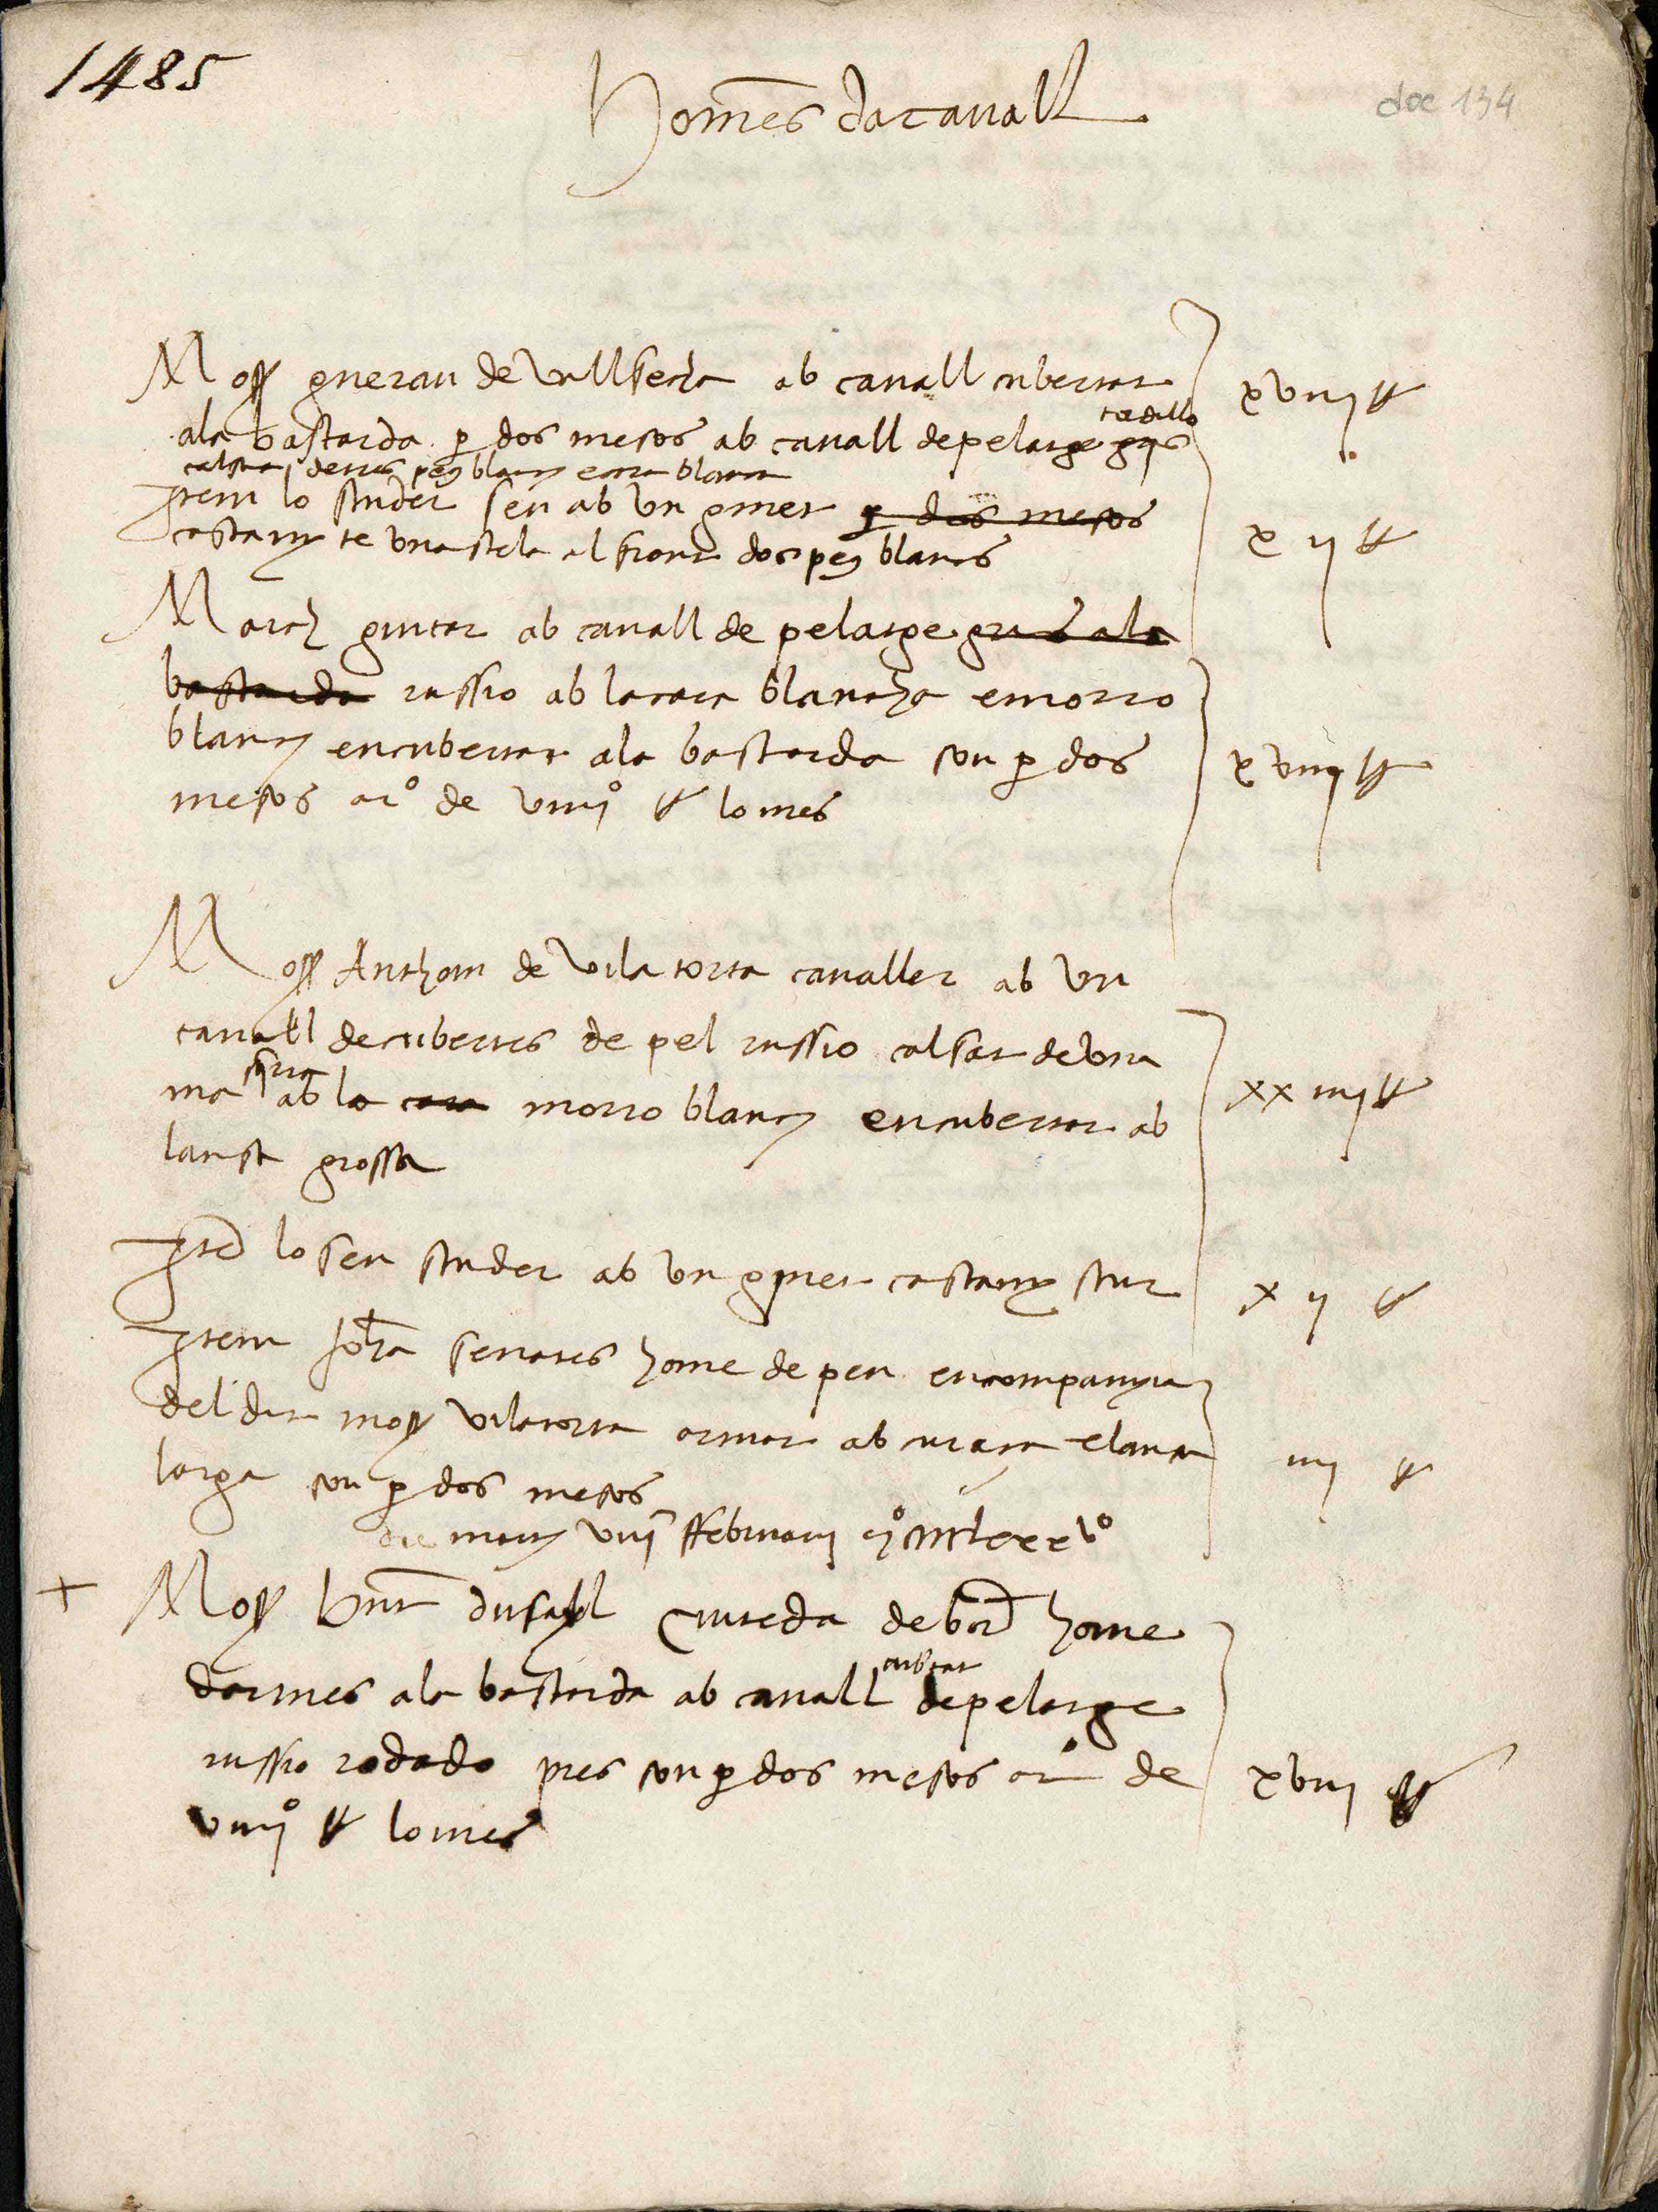 Primer foli del manuscrit, un document inèdit que aporta informació sobre la composició de la host que va sortir de Barcelona per derrotar els remences